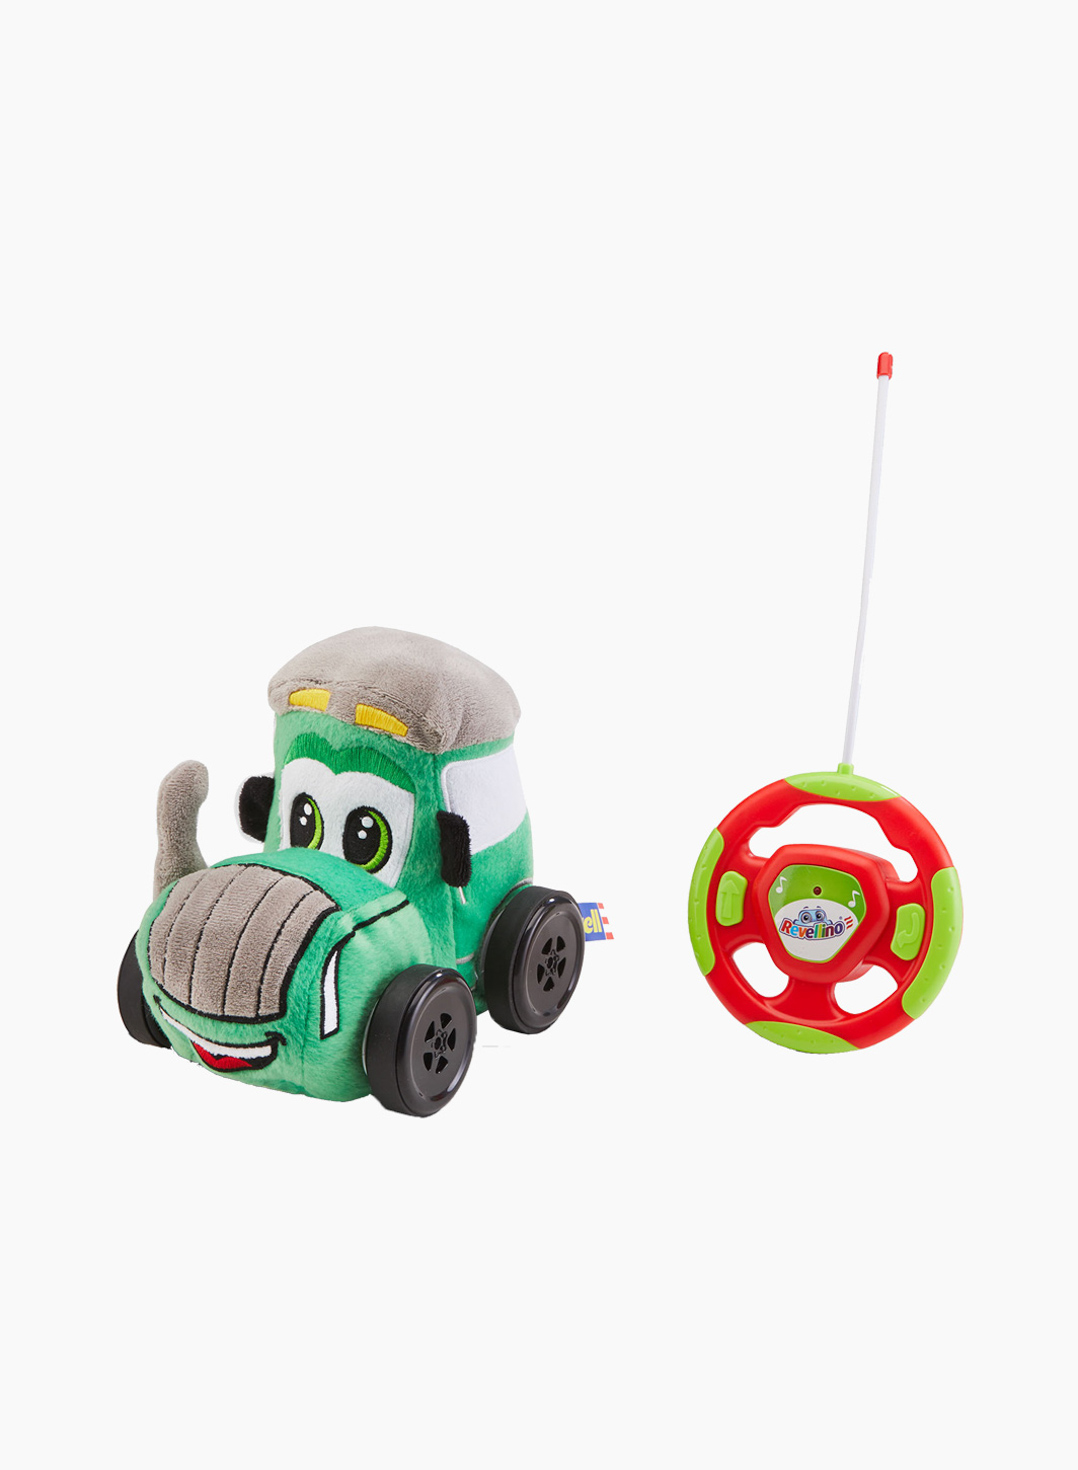 Revell Հեռակառավարվող խաղալիք «Իմ առաջին տրակտորը»